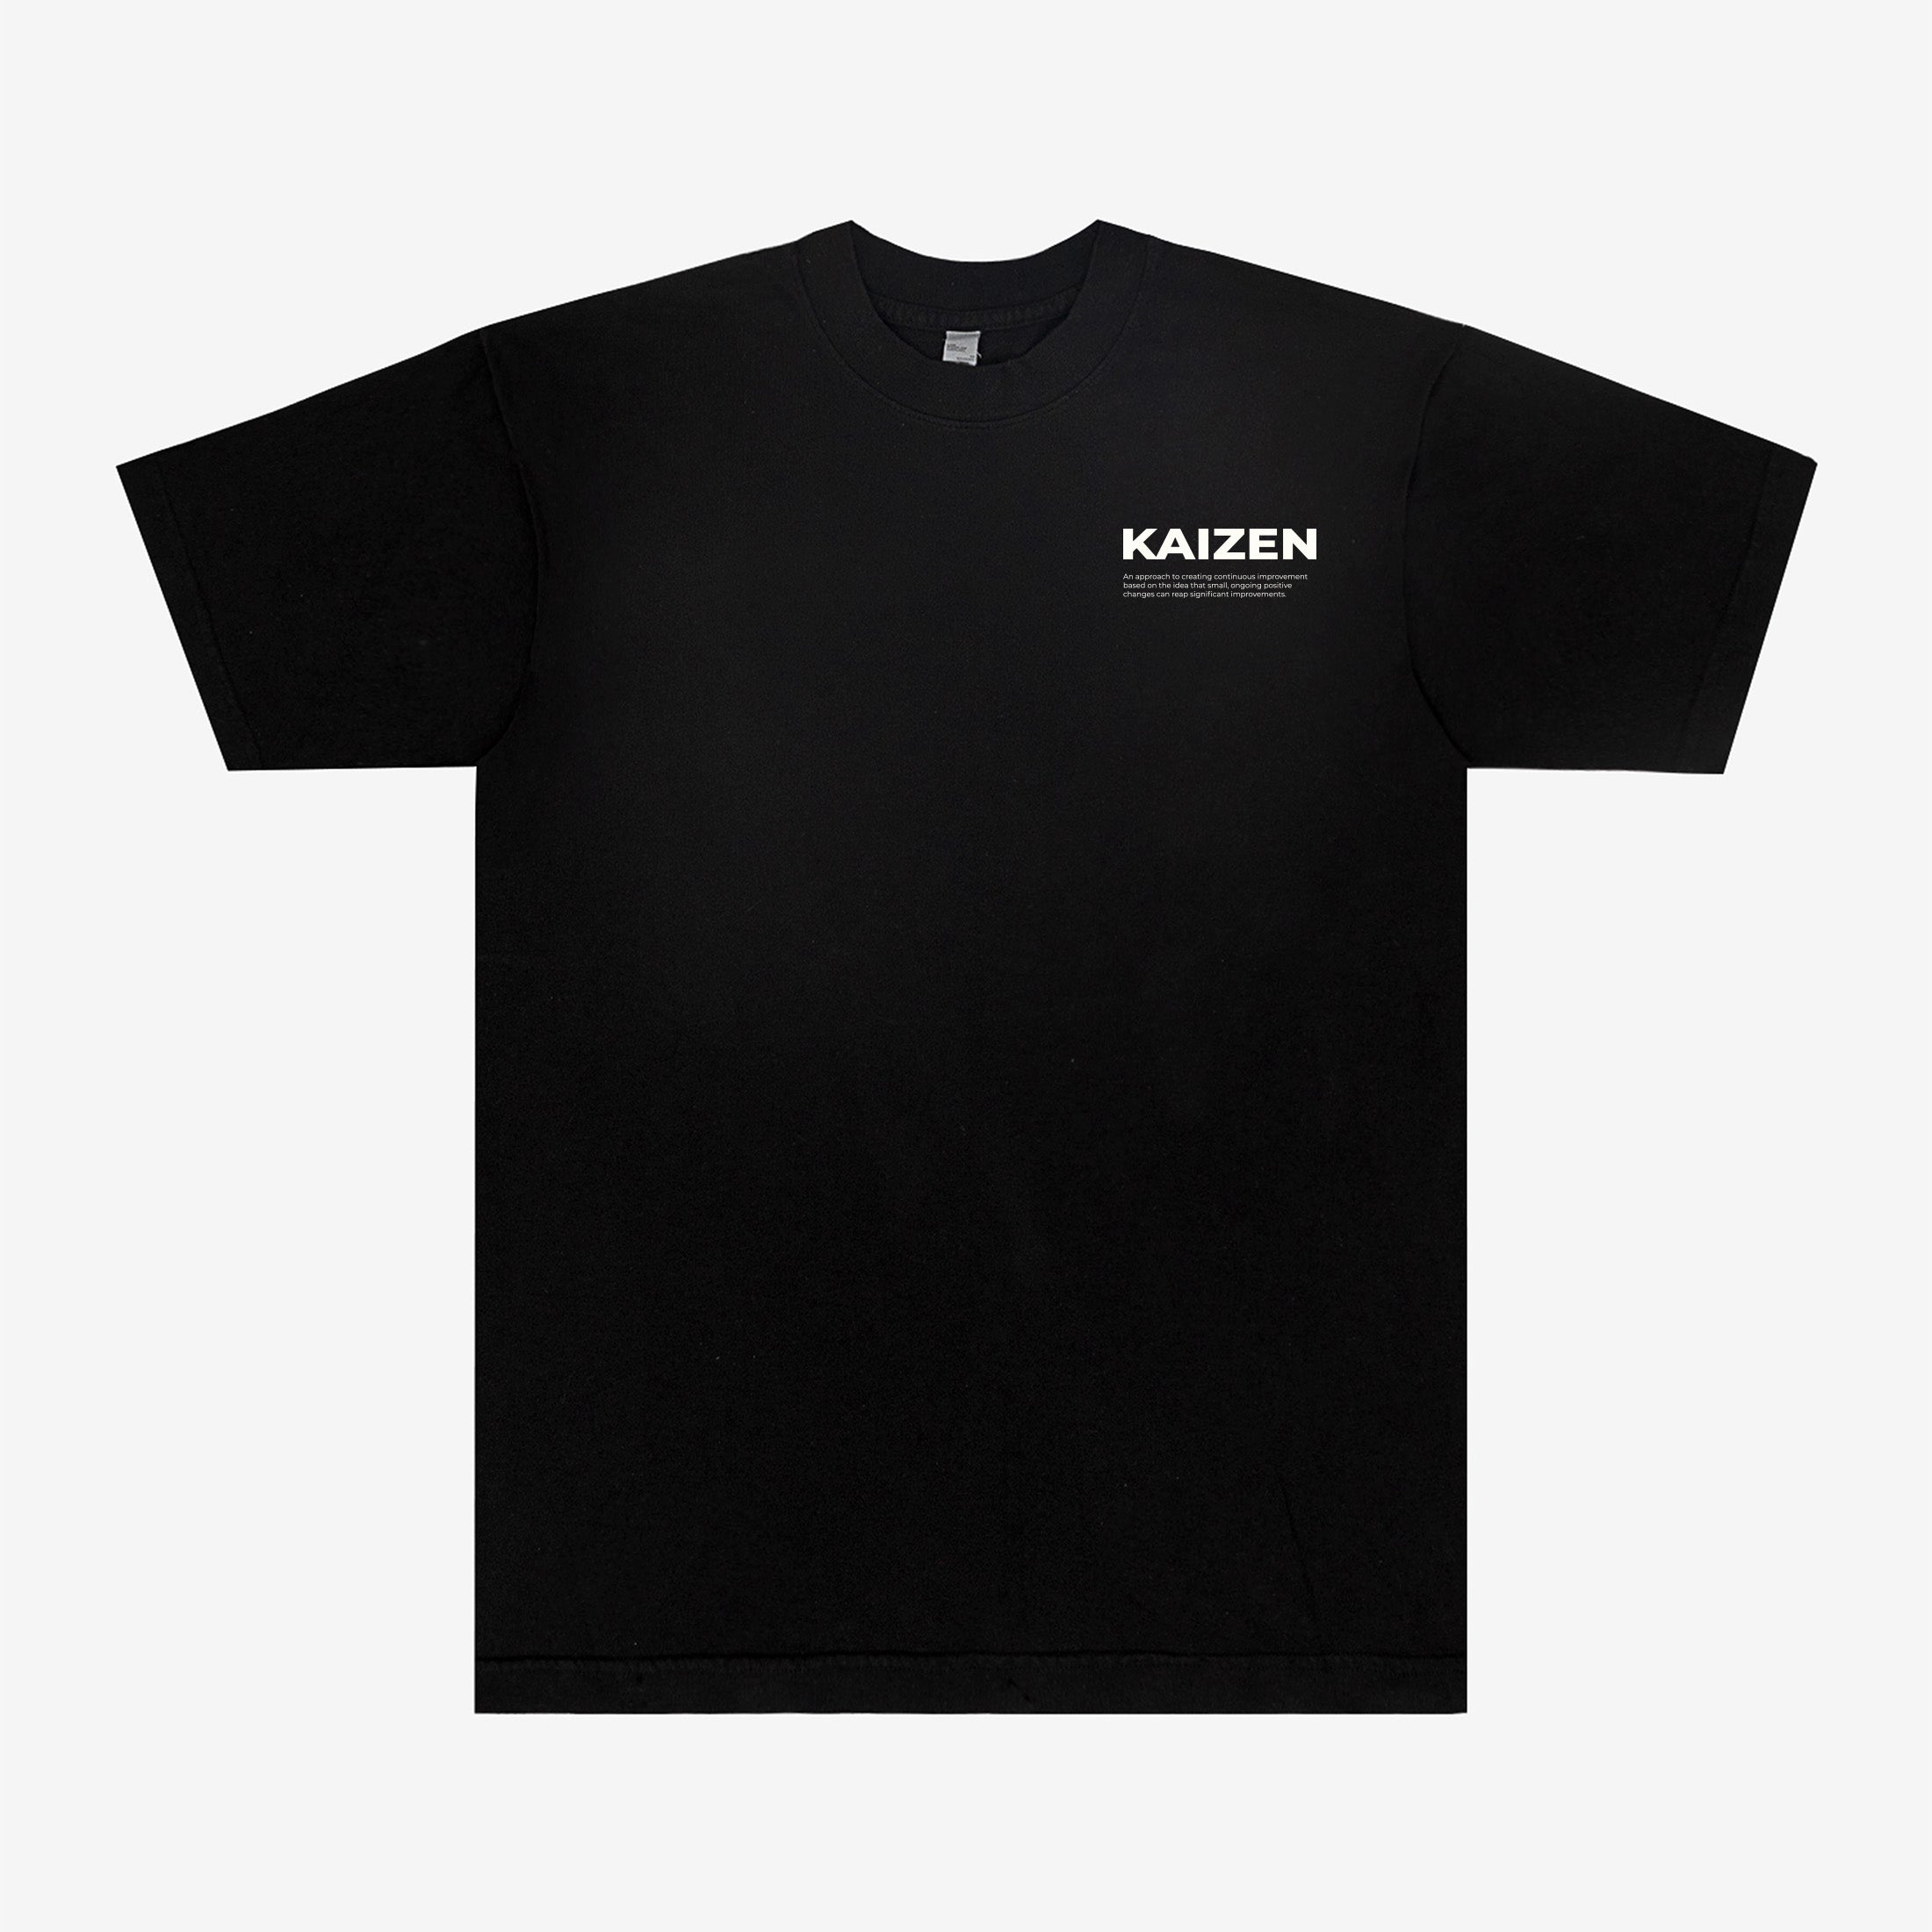 kaizen shirt